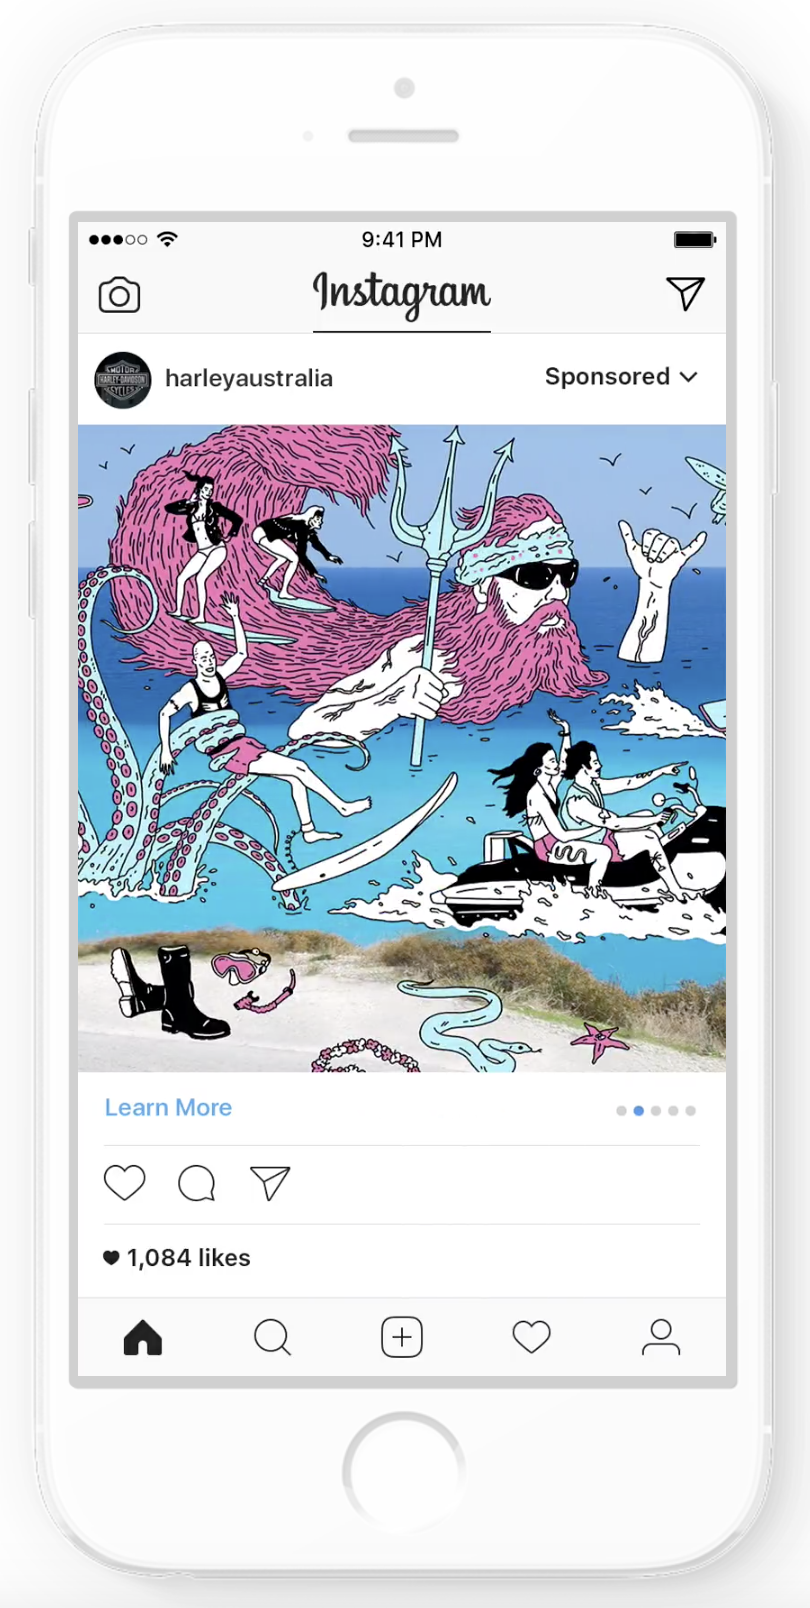 formato de publicidad en instagram - secuencia